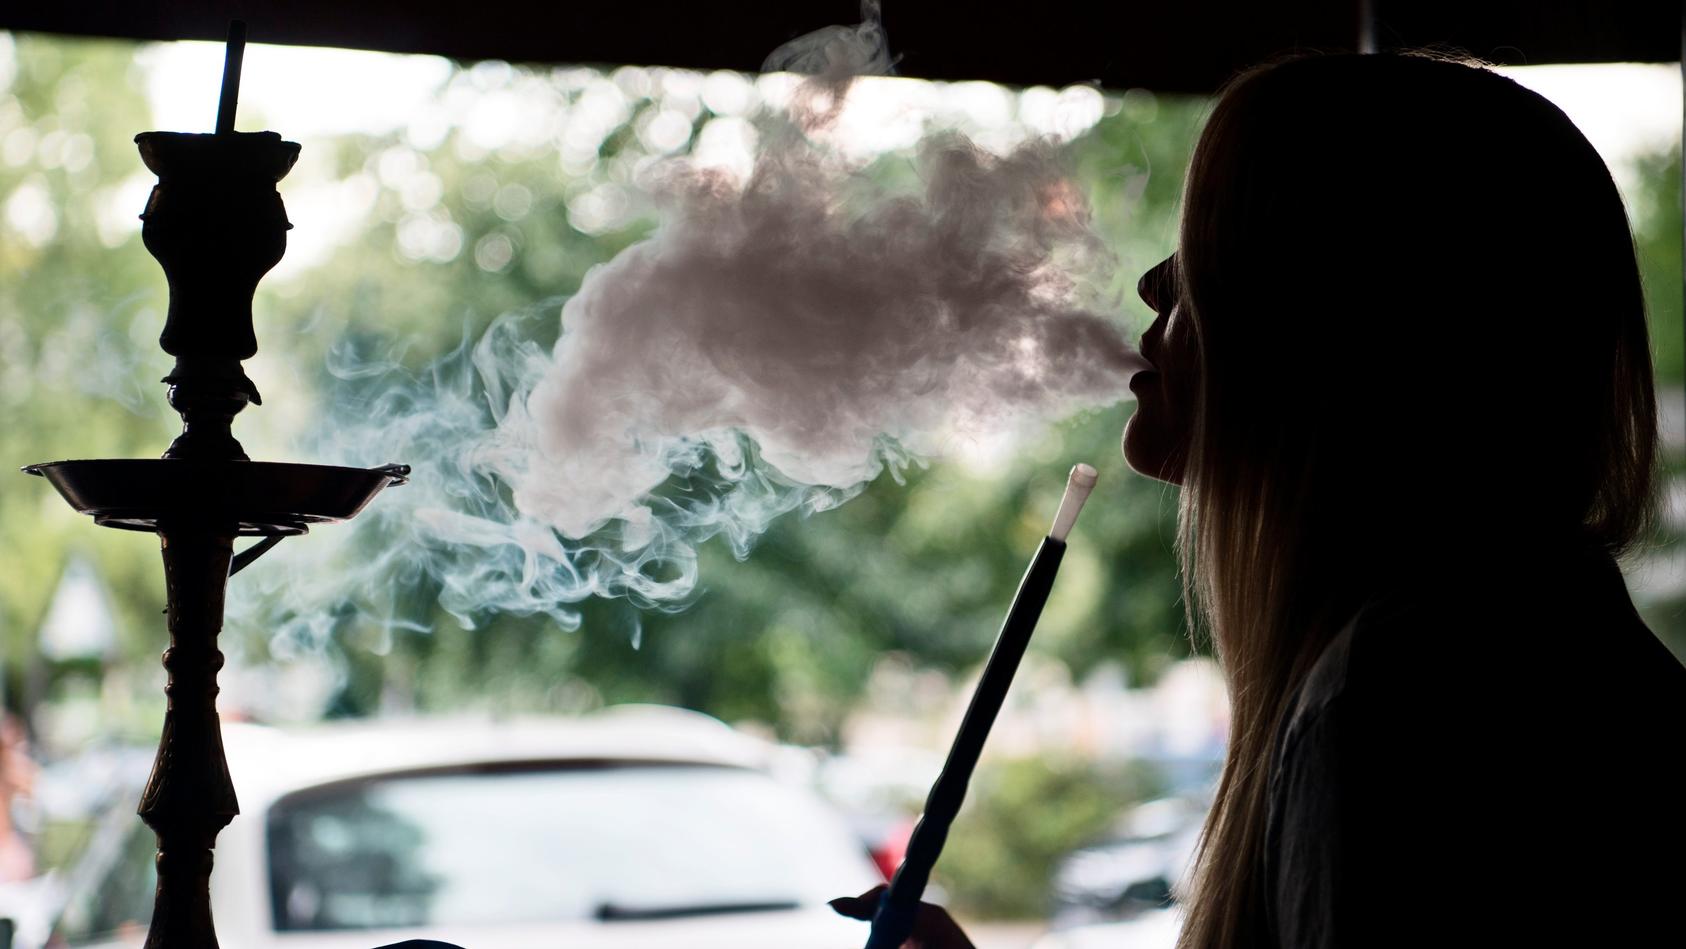 Eine junge Frau raucht am 21.07.2016 in einer Shisha-Bar in Berlin Tabak der Sorte «Traube-Minze» in einer Wasserpfeife. Shisha-Rauchen liegt im Trend: Die arabische Wasserpfeife ist besonders bei jungen Leuten beliebt.